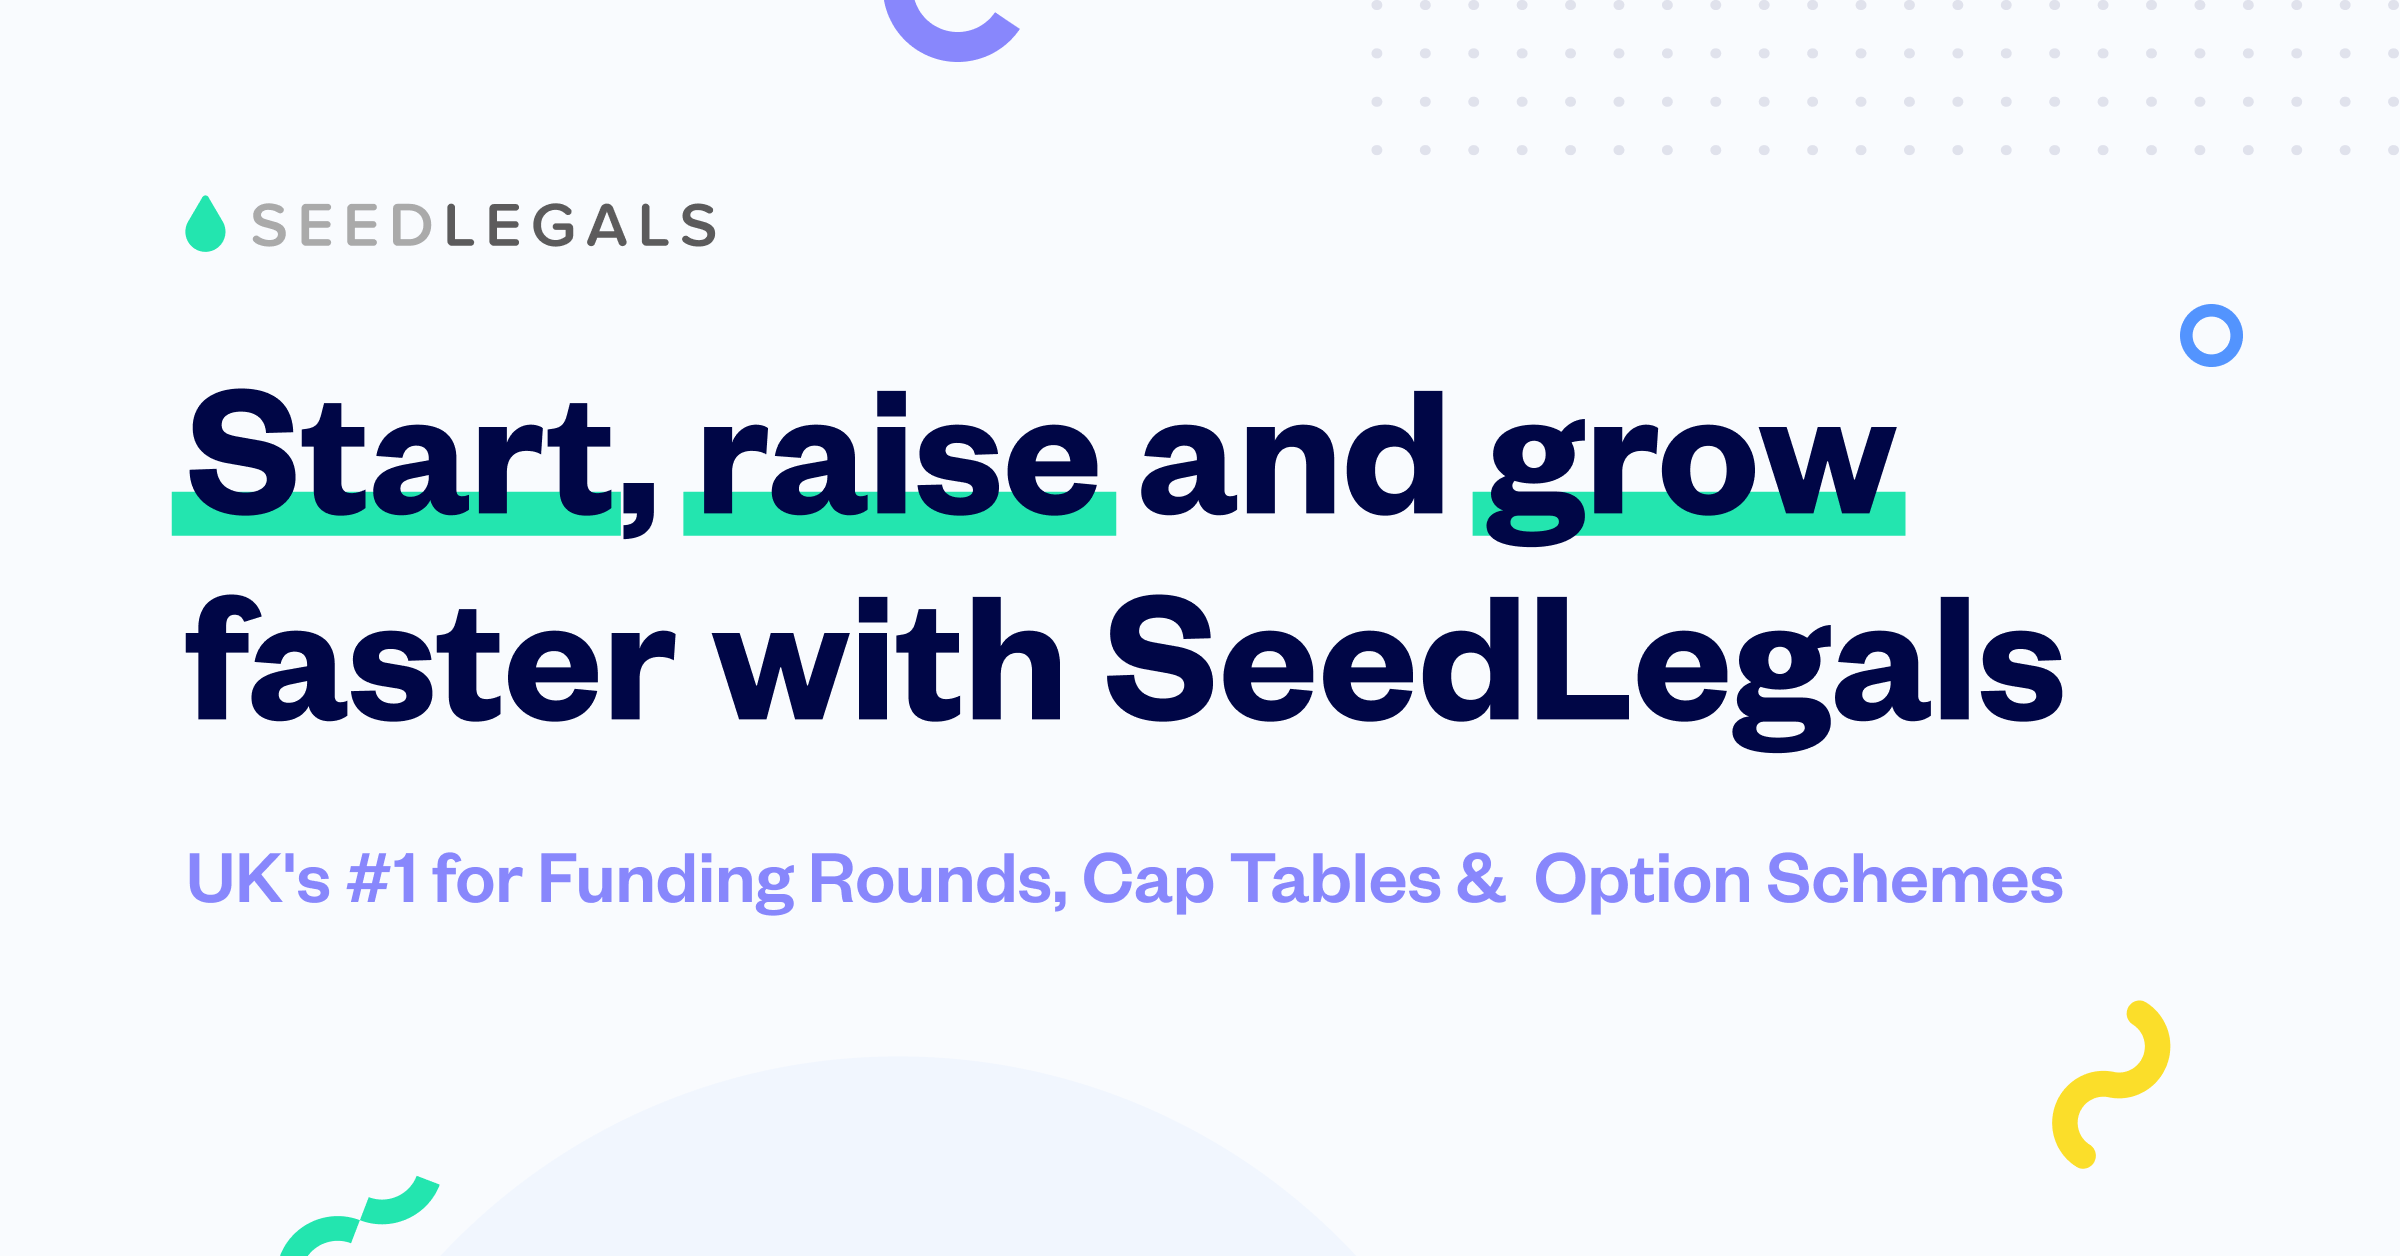 (c) Seedlegals.com